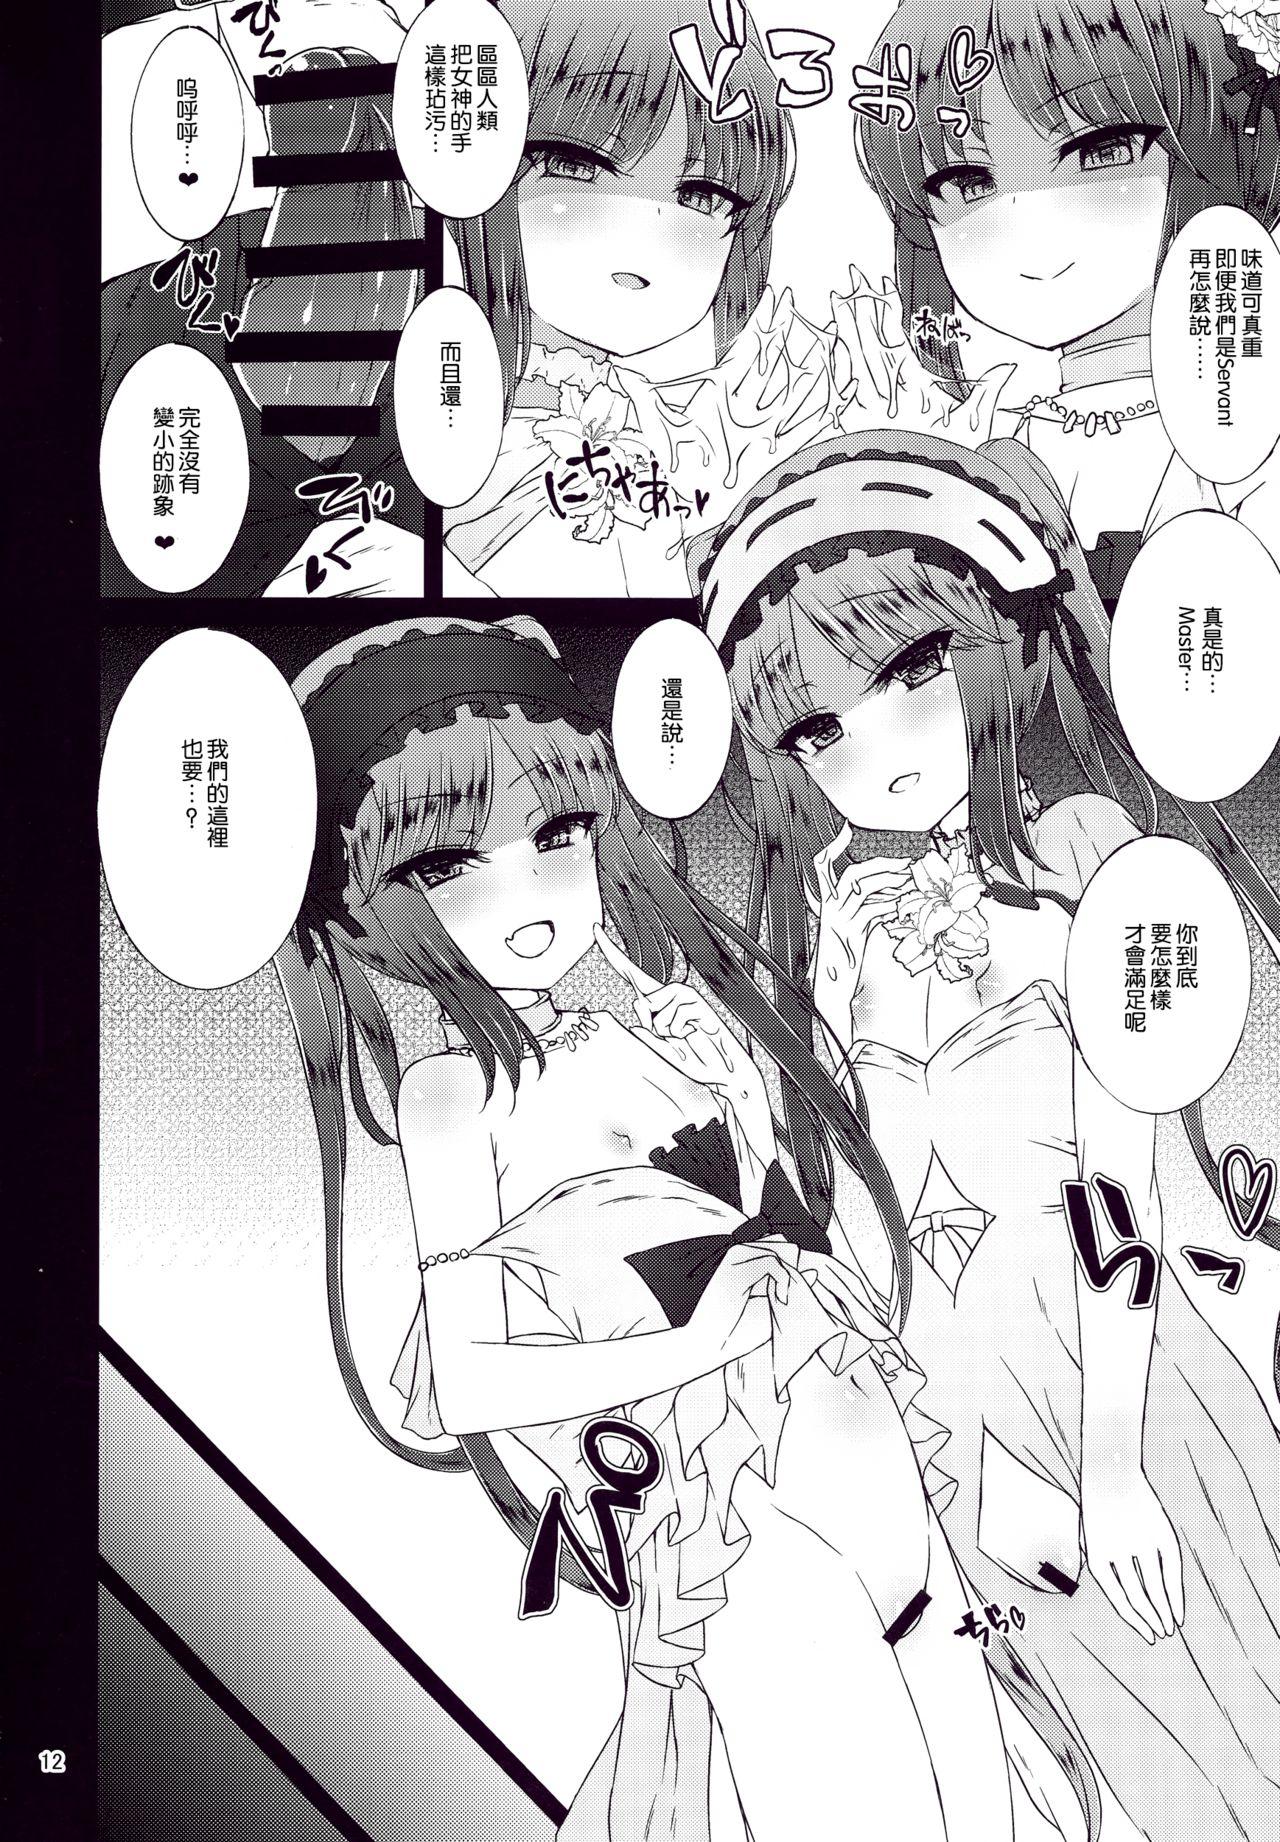 Oral Megami no Itazura - Fate grand order Camgirl - Page 12